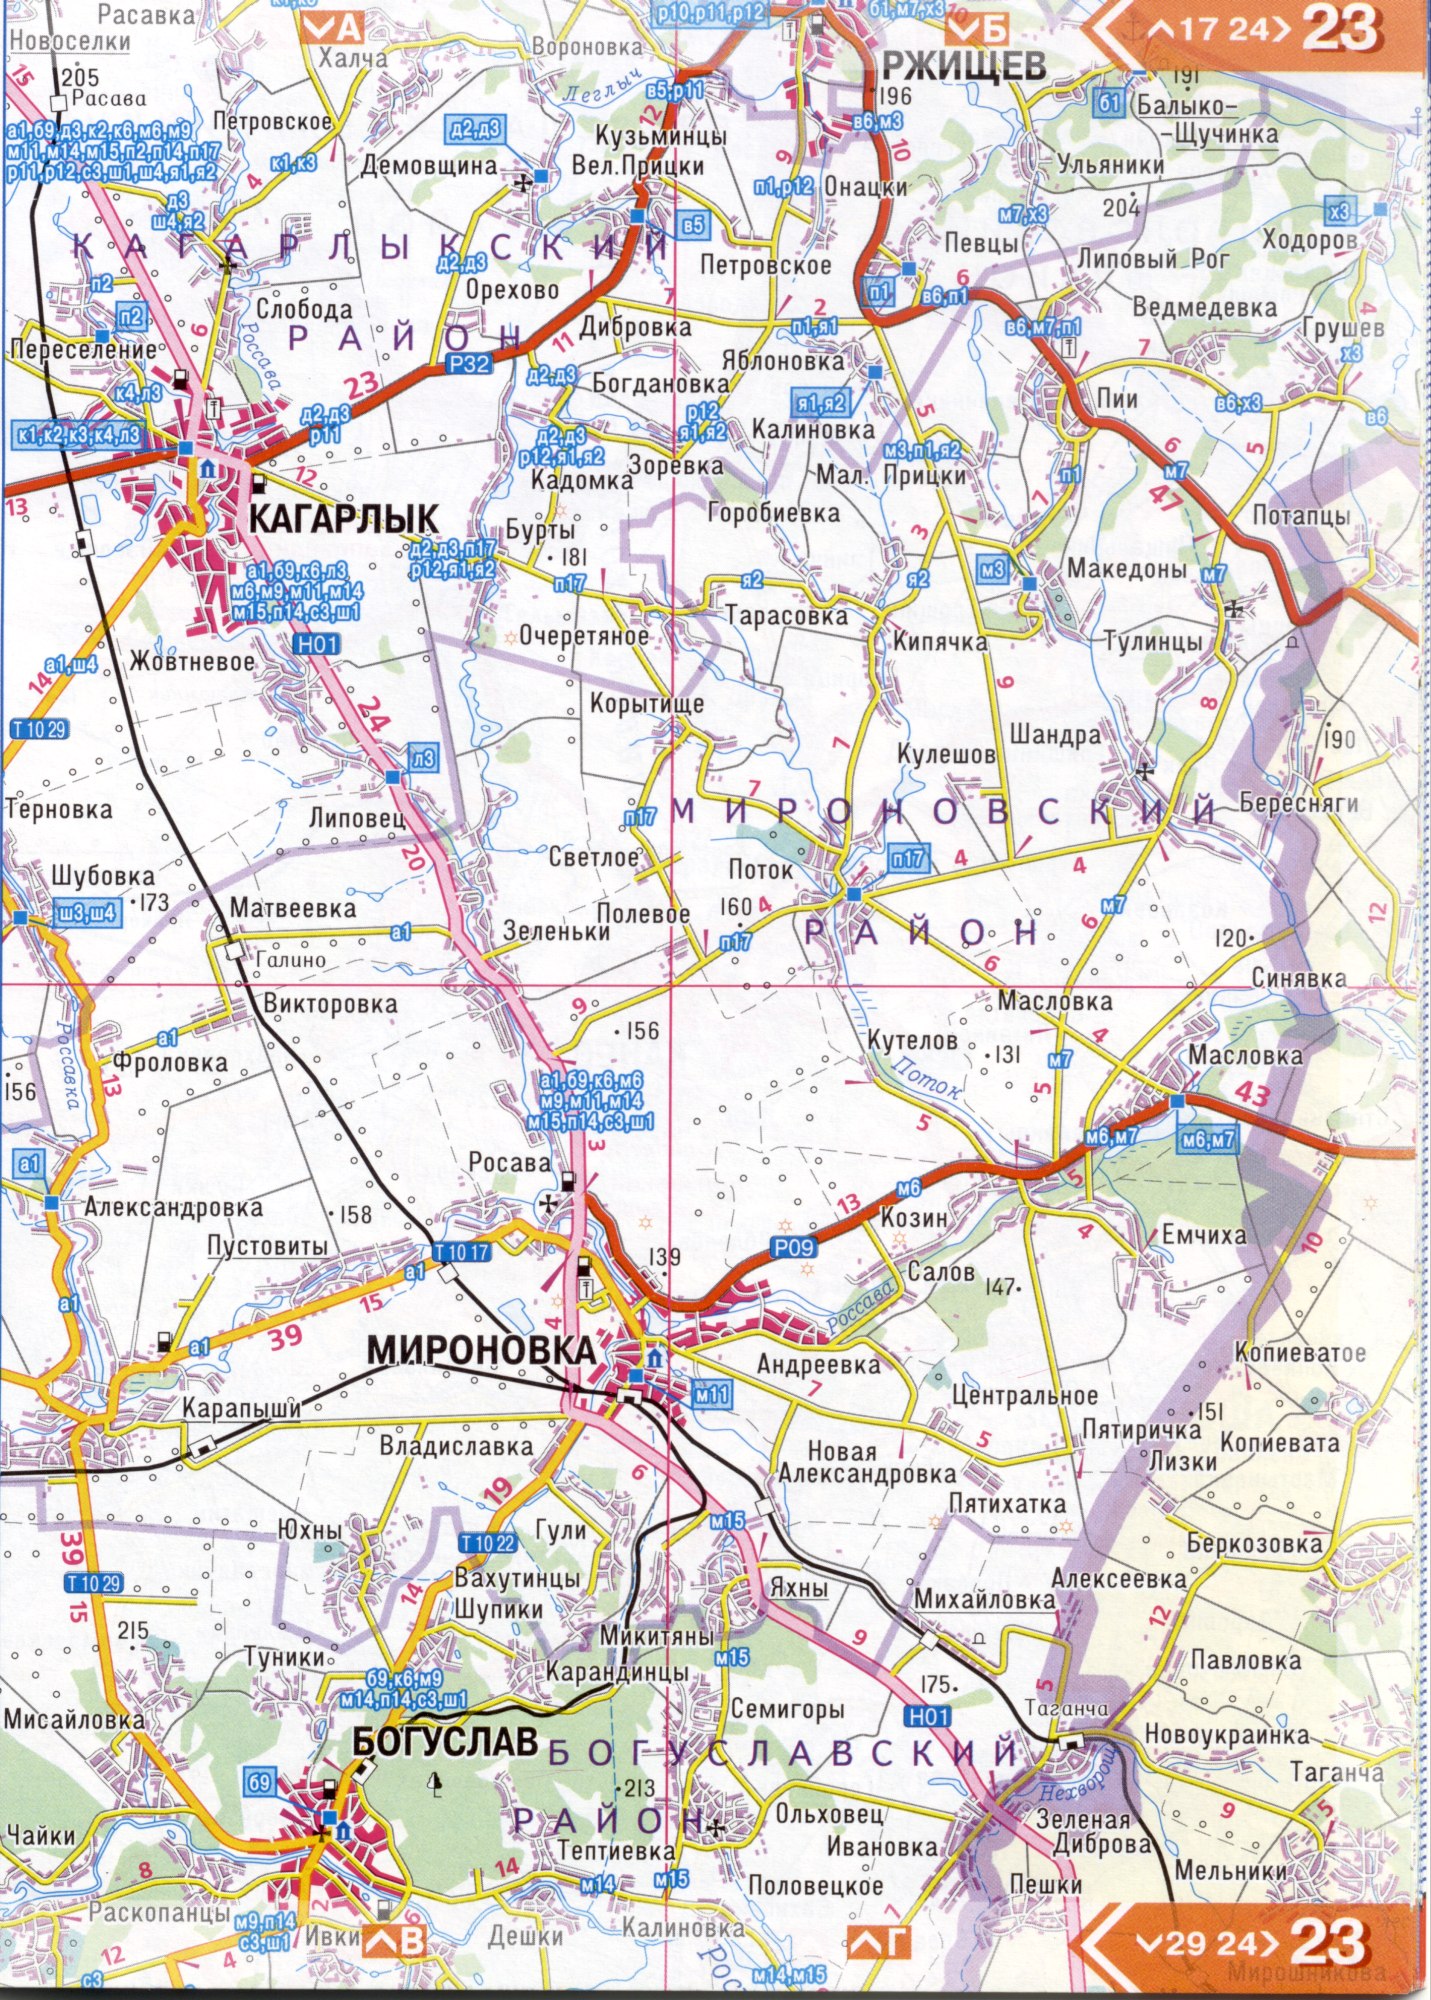 Atlas von der Region Kiew. Eine detaillierte Karte der Region Kiew von dem Atlas von Autobahnen. Kiewer Gebiet auf einer detaillierten Karte Maßstab 1cm = 3km. Herunterladen frei, D4 - Kagarlyk